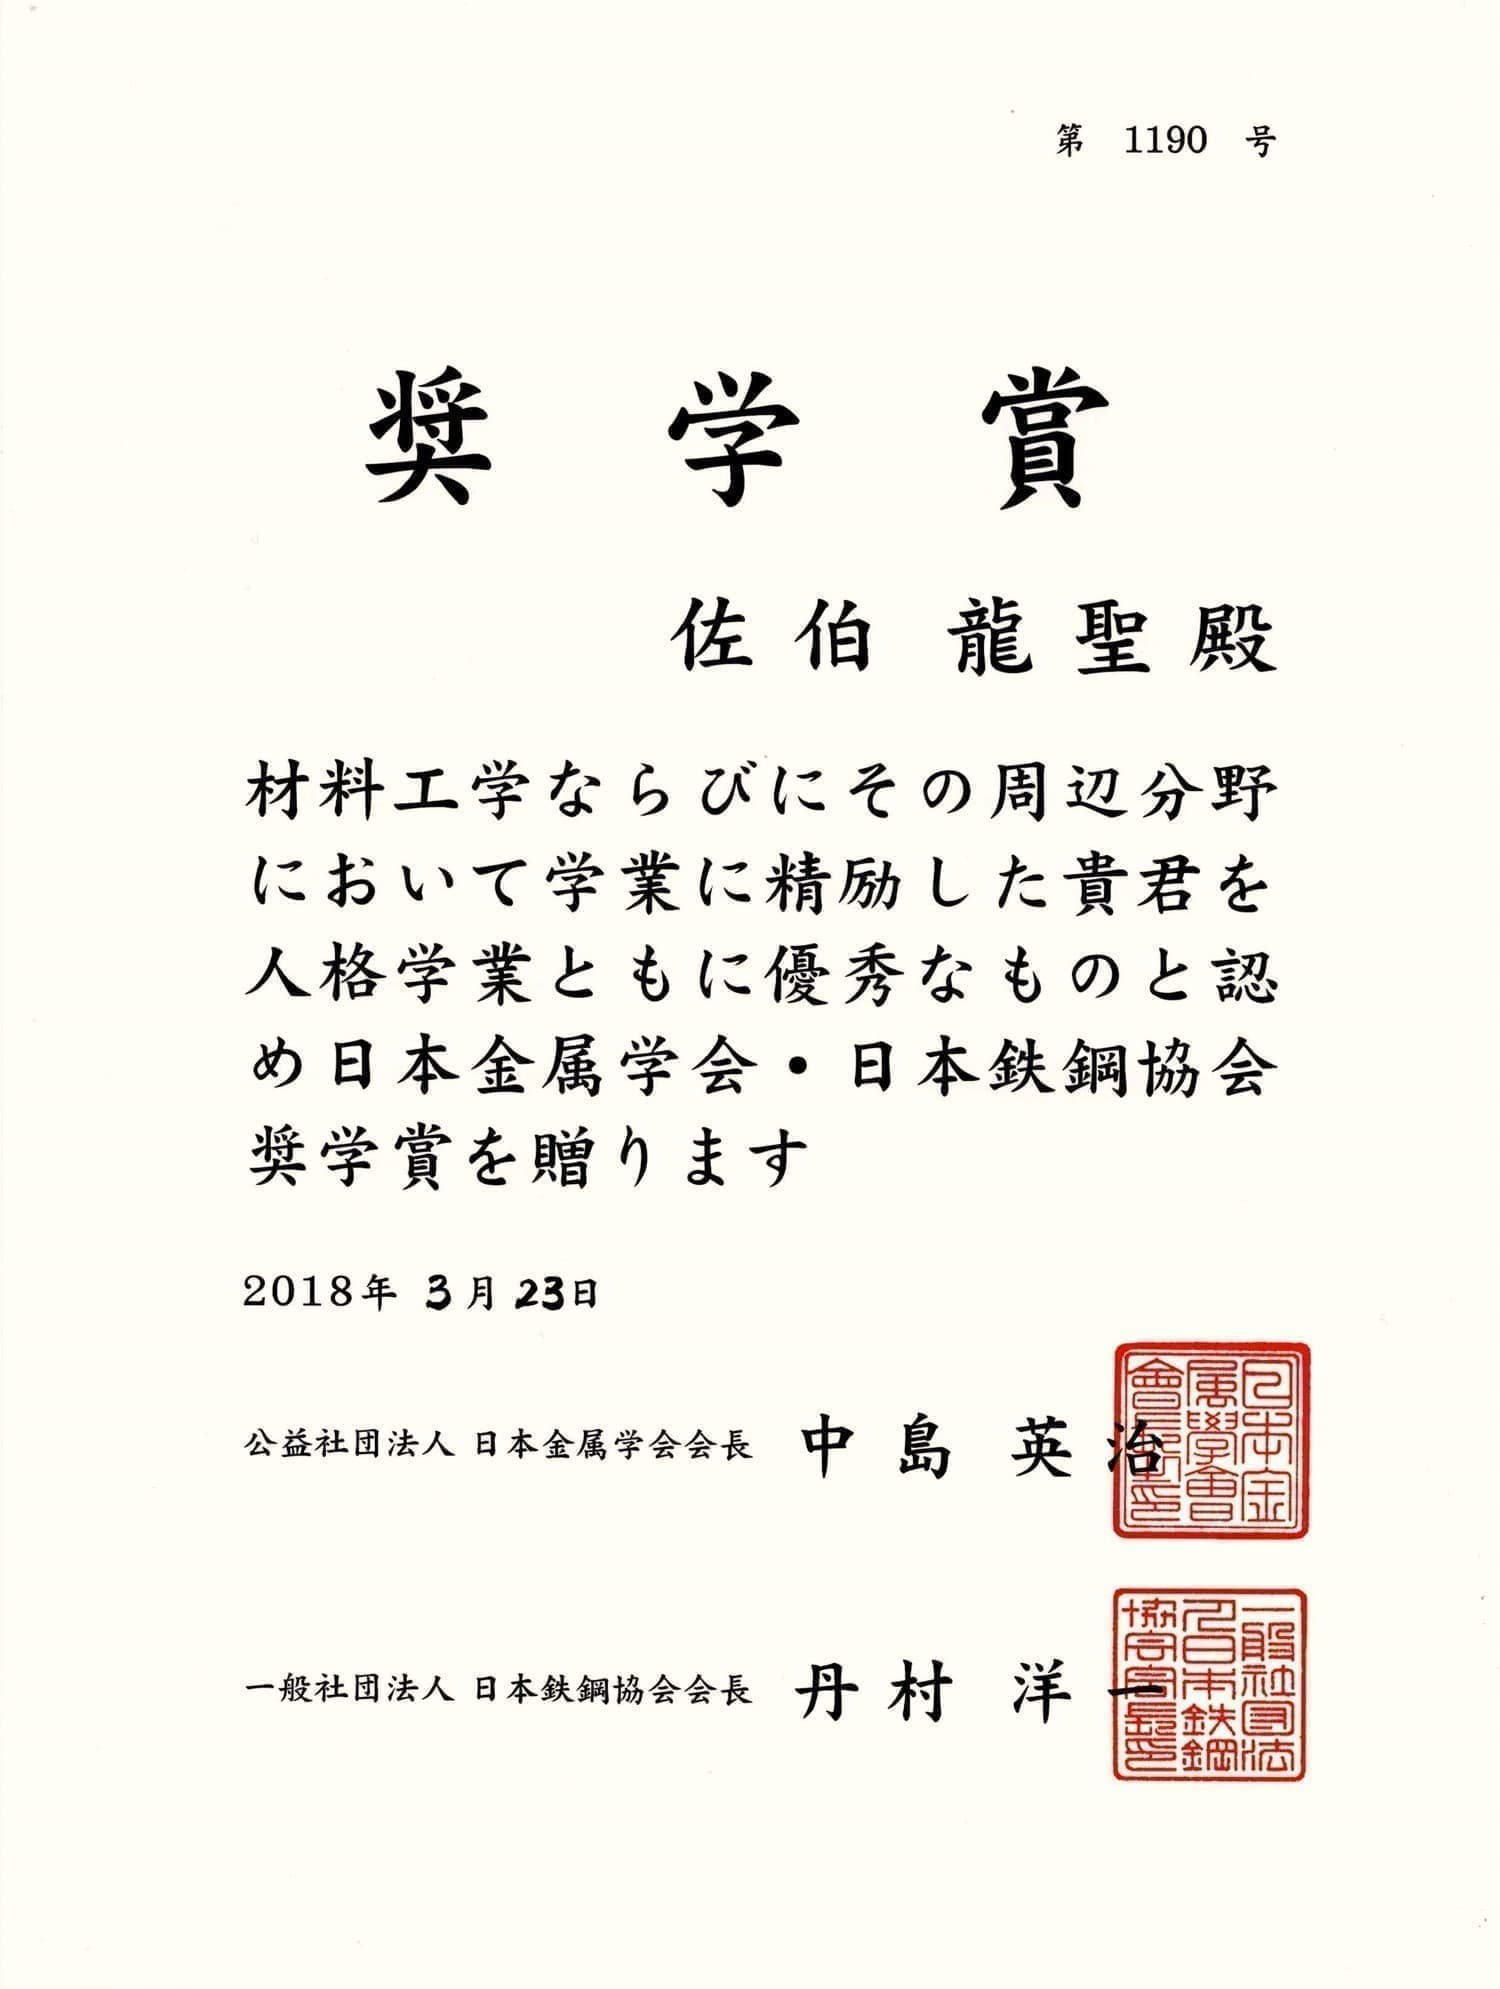 佐伯龍聖君(B4)が、奨学賞（日本金属学会・日本鉄鋼協会）を受賞しました。2018/03/23